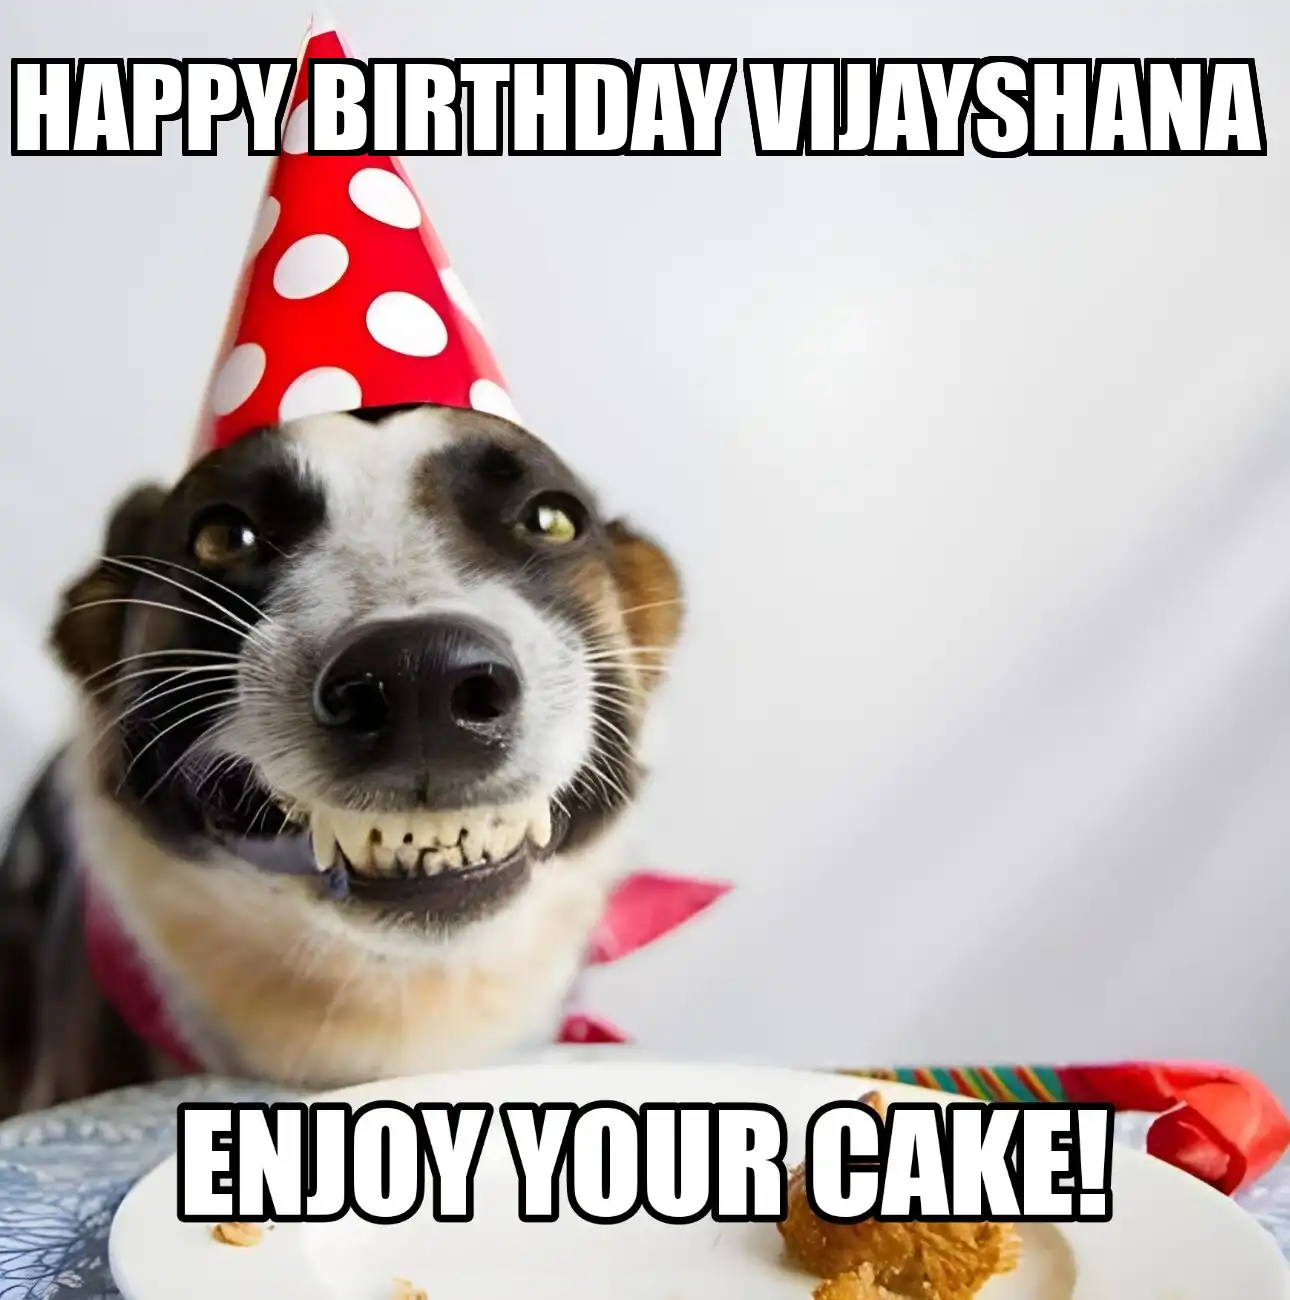 Happy Birthday Vijayshana Enjoy Your Cake Dog Meme